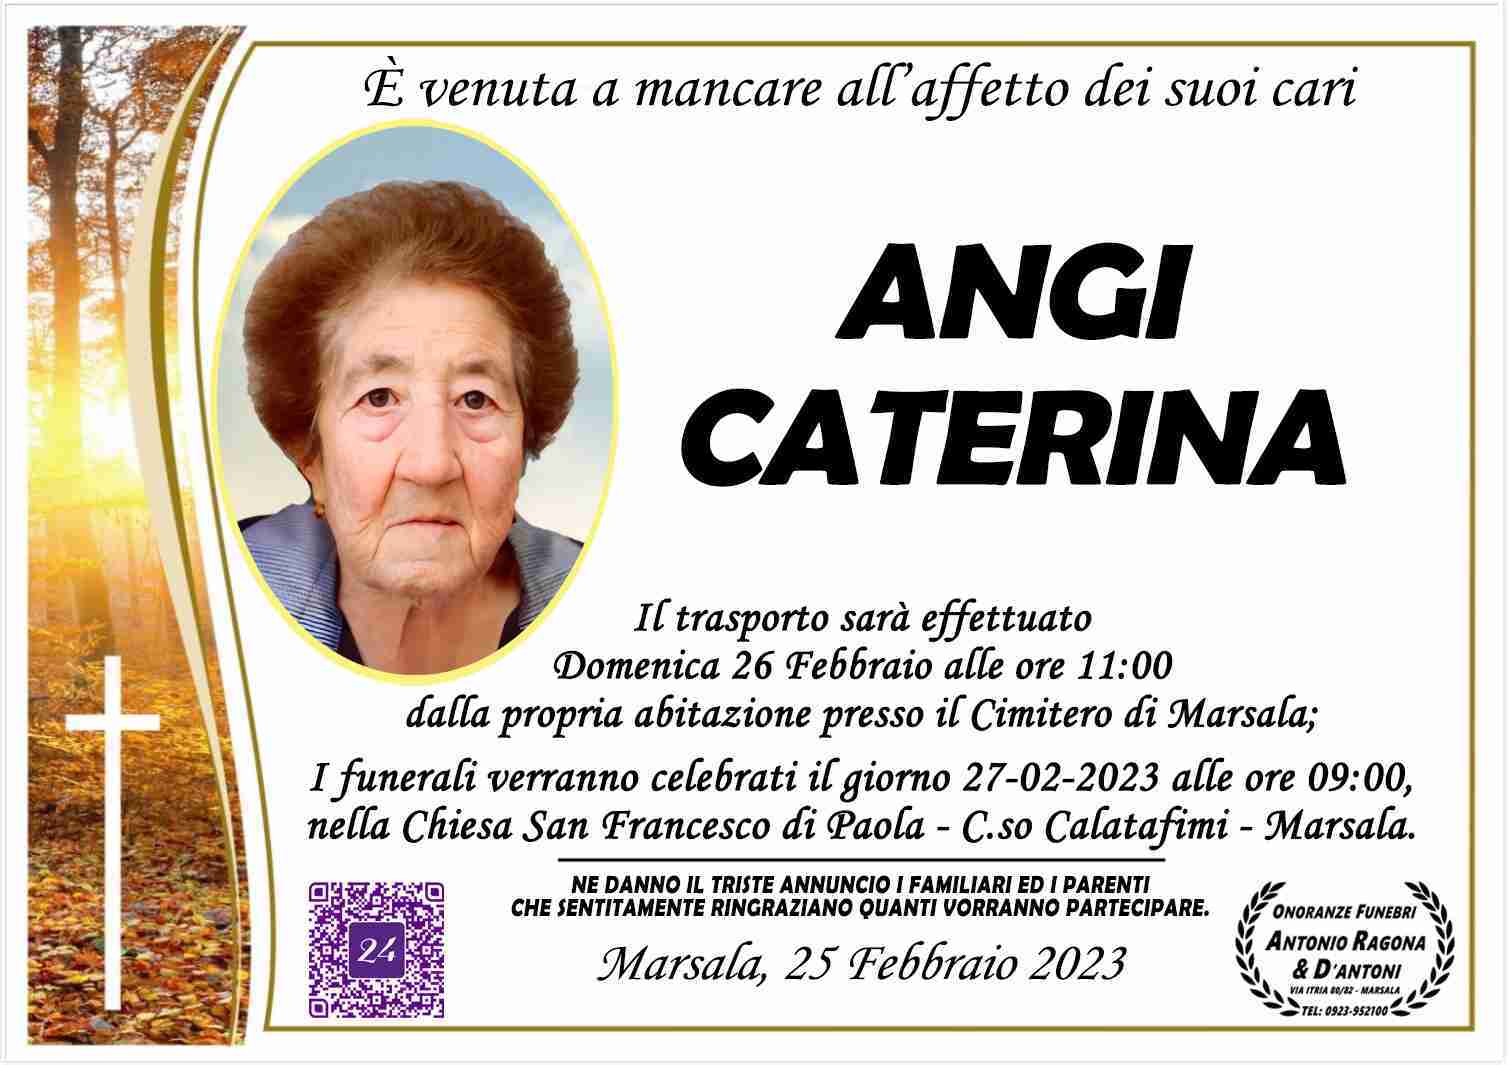 Caterina Angi